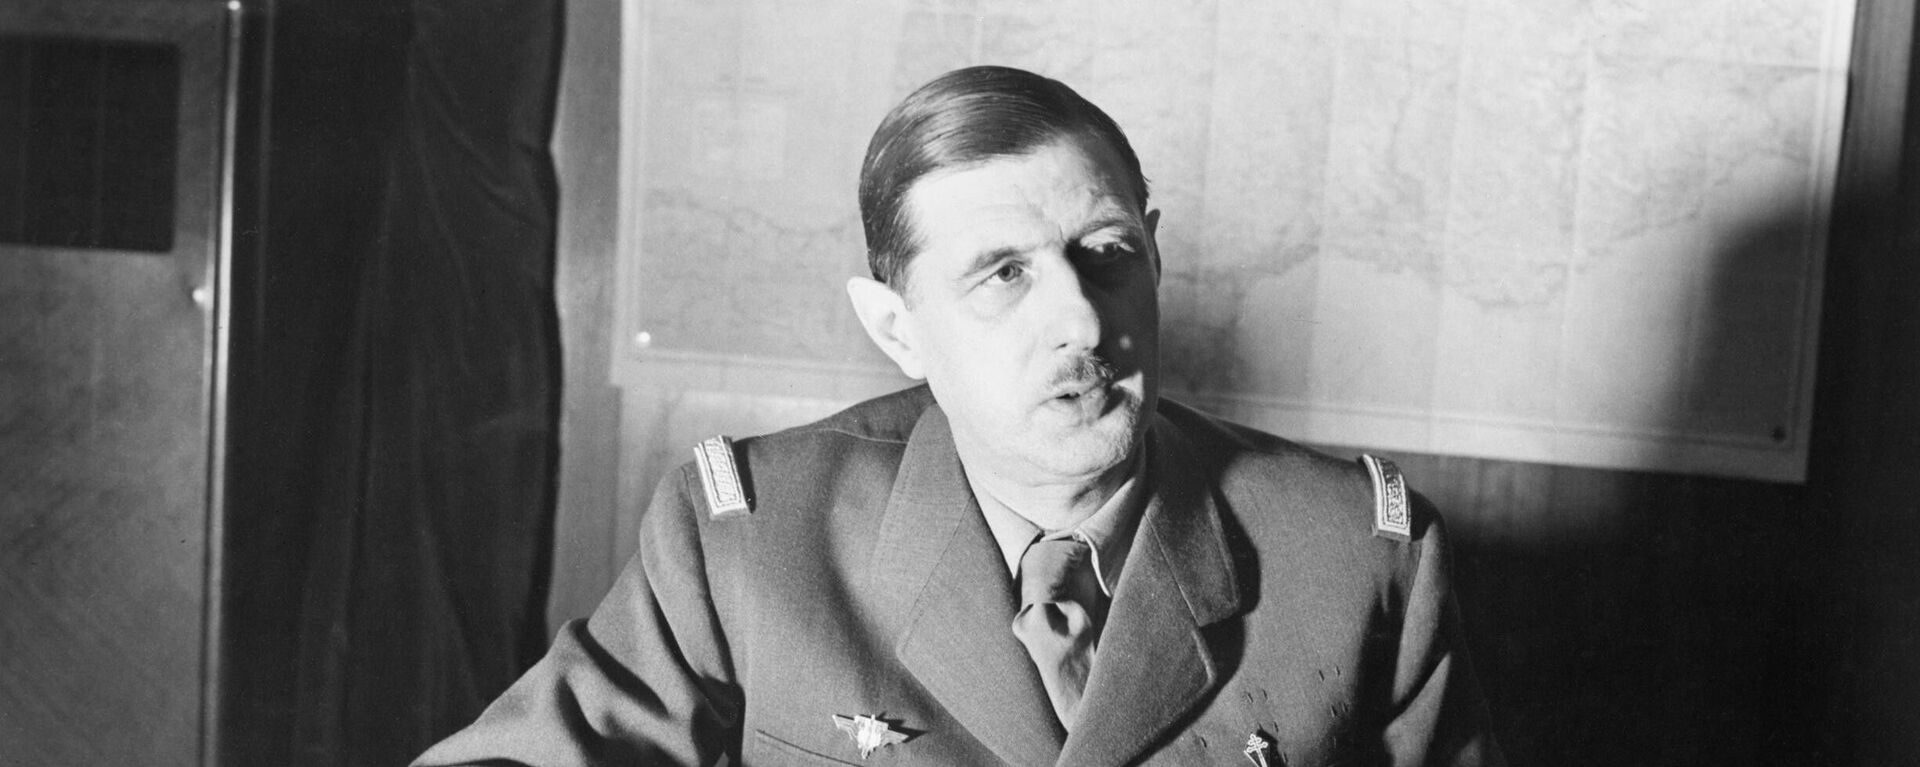 Командующий силами Свободной Франции генерал Шарль де Голль сидит за своим столом в Лондоне во время Второй мировой войны. - Sputnik Արմենիա, 1920, 28.04.2021